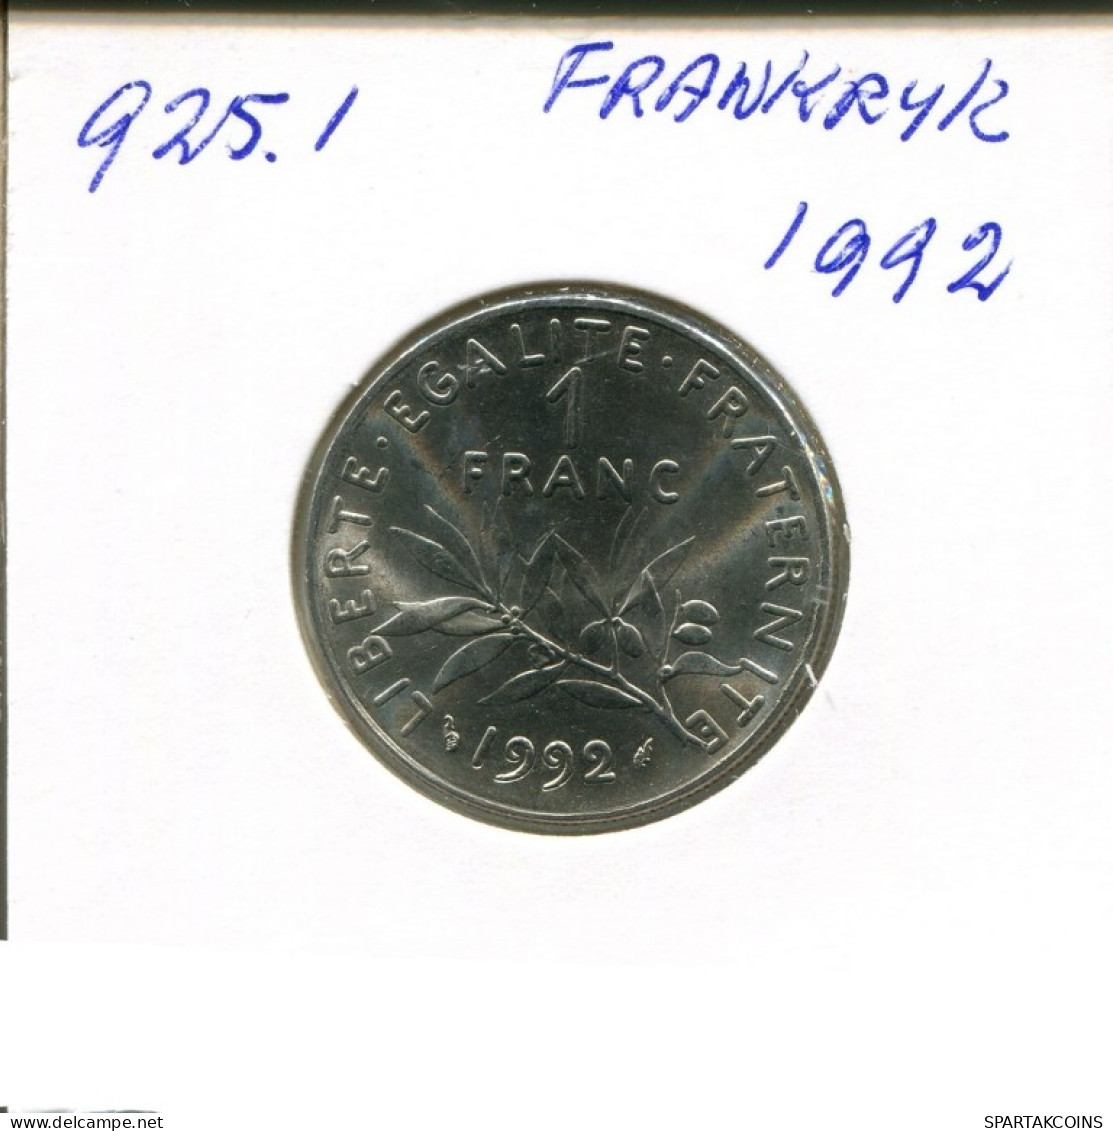 1 FRANC 1992 FRANKREICH FRANCE Französisch Münze #AN325.D.A - 1 Franc